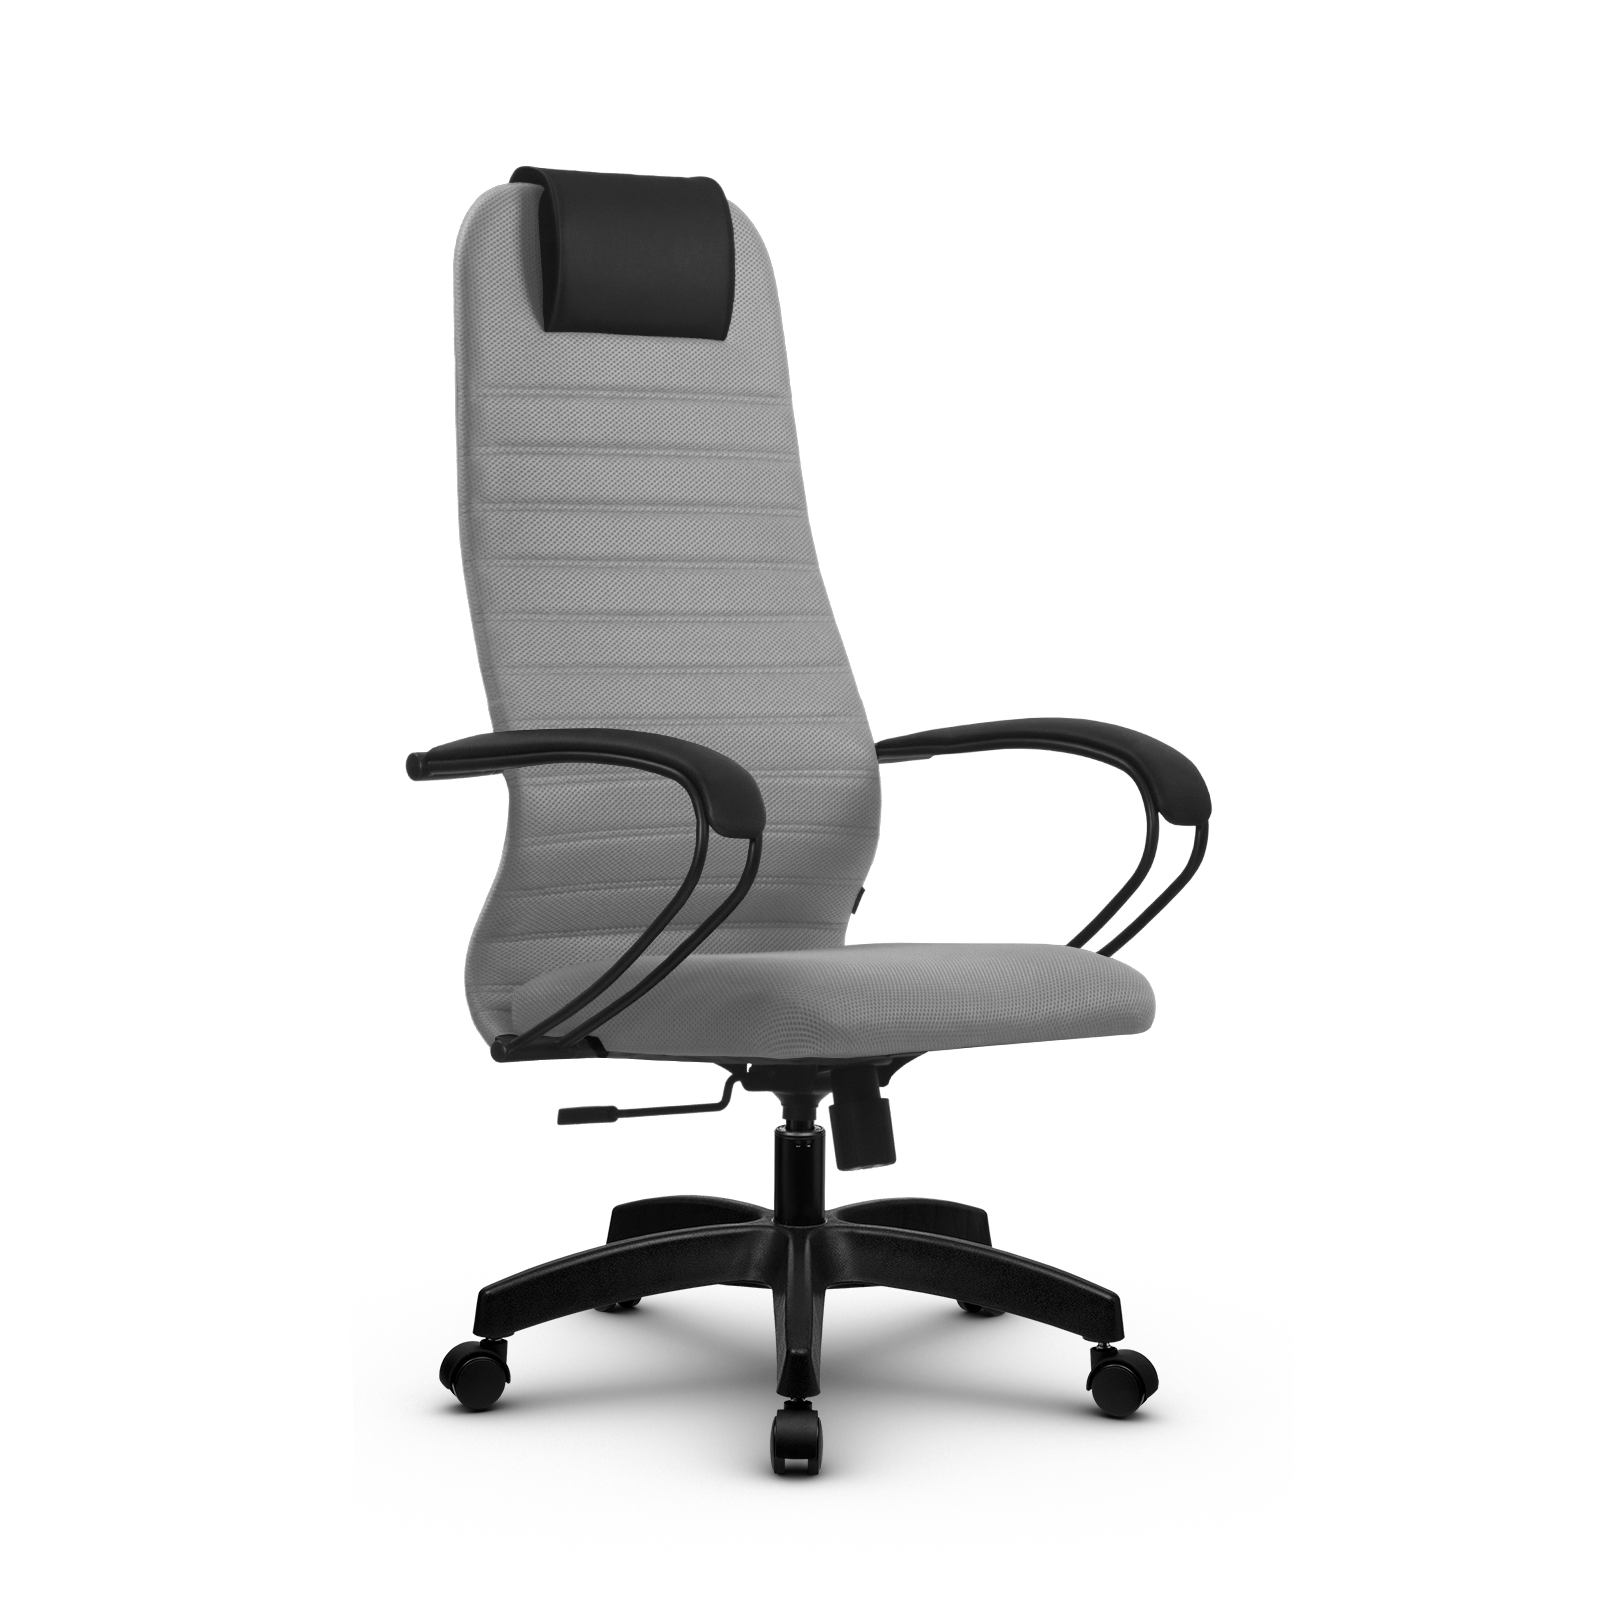 90488604 Офисное кресло Su z312447415 прочный сетчатый материал цвет светло-серый STLM-0248482 МЕТТА